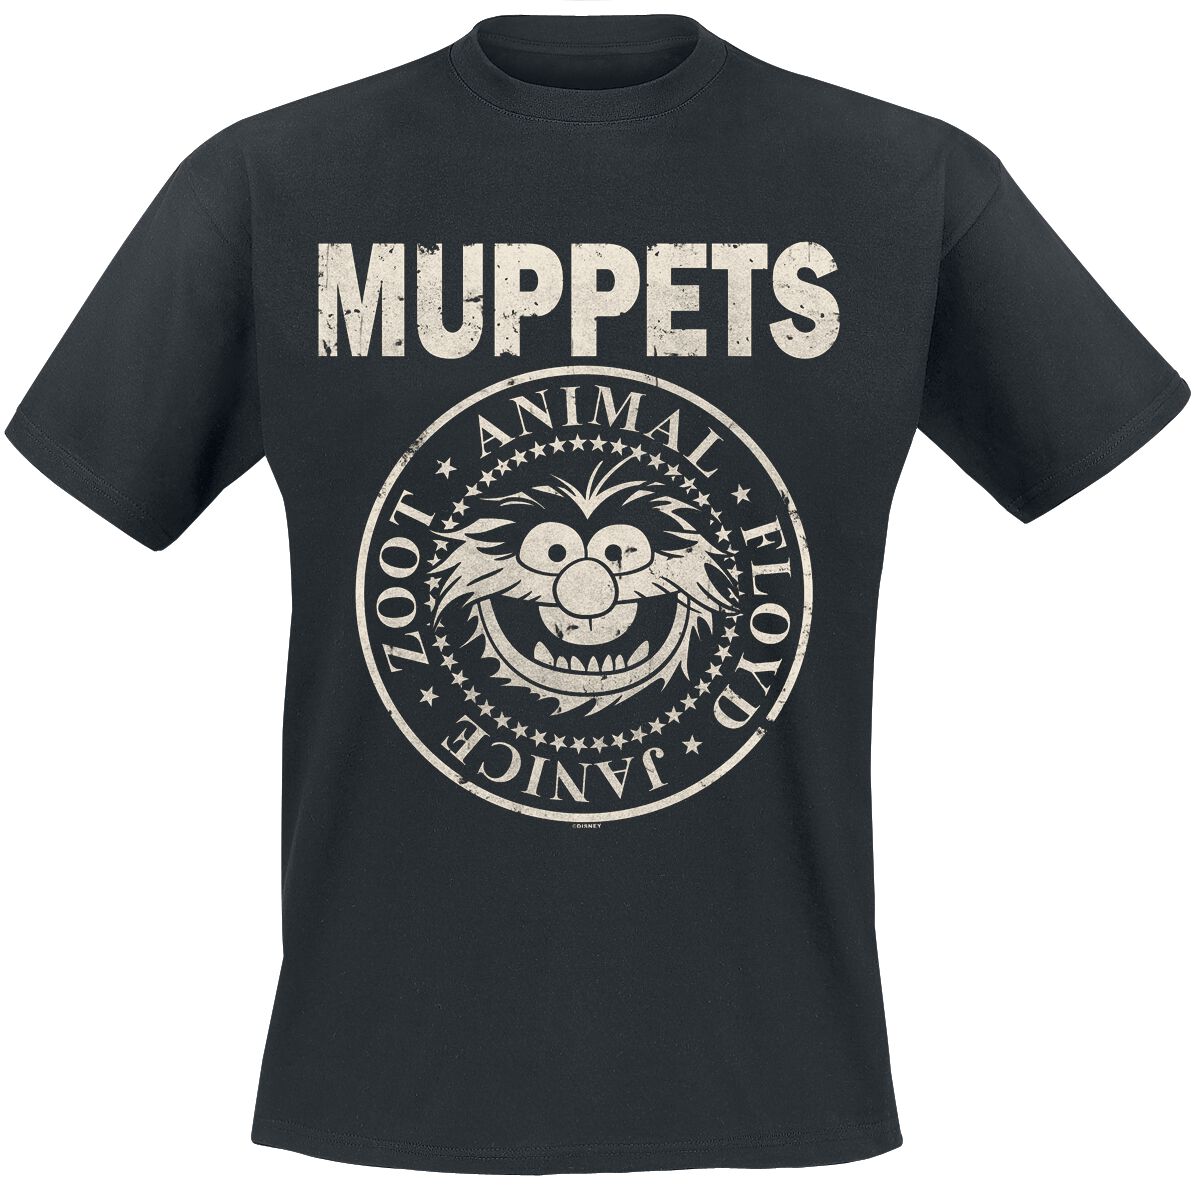 Die Muppets T-Shirt - Animal - Rock ´n Roll - S bis XXL - für Männer - Größe L - schwarz  - EMP exklusives Merchandise!